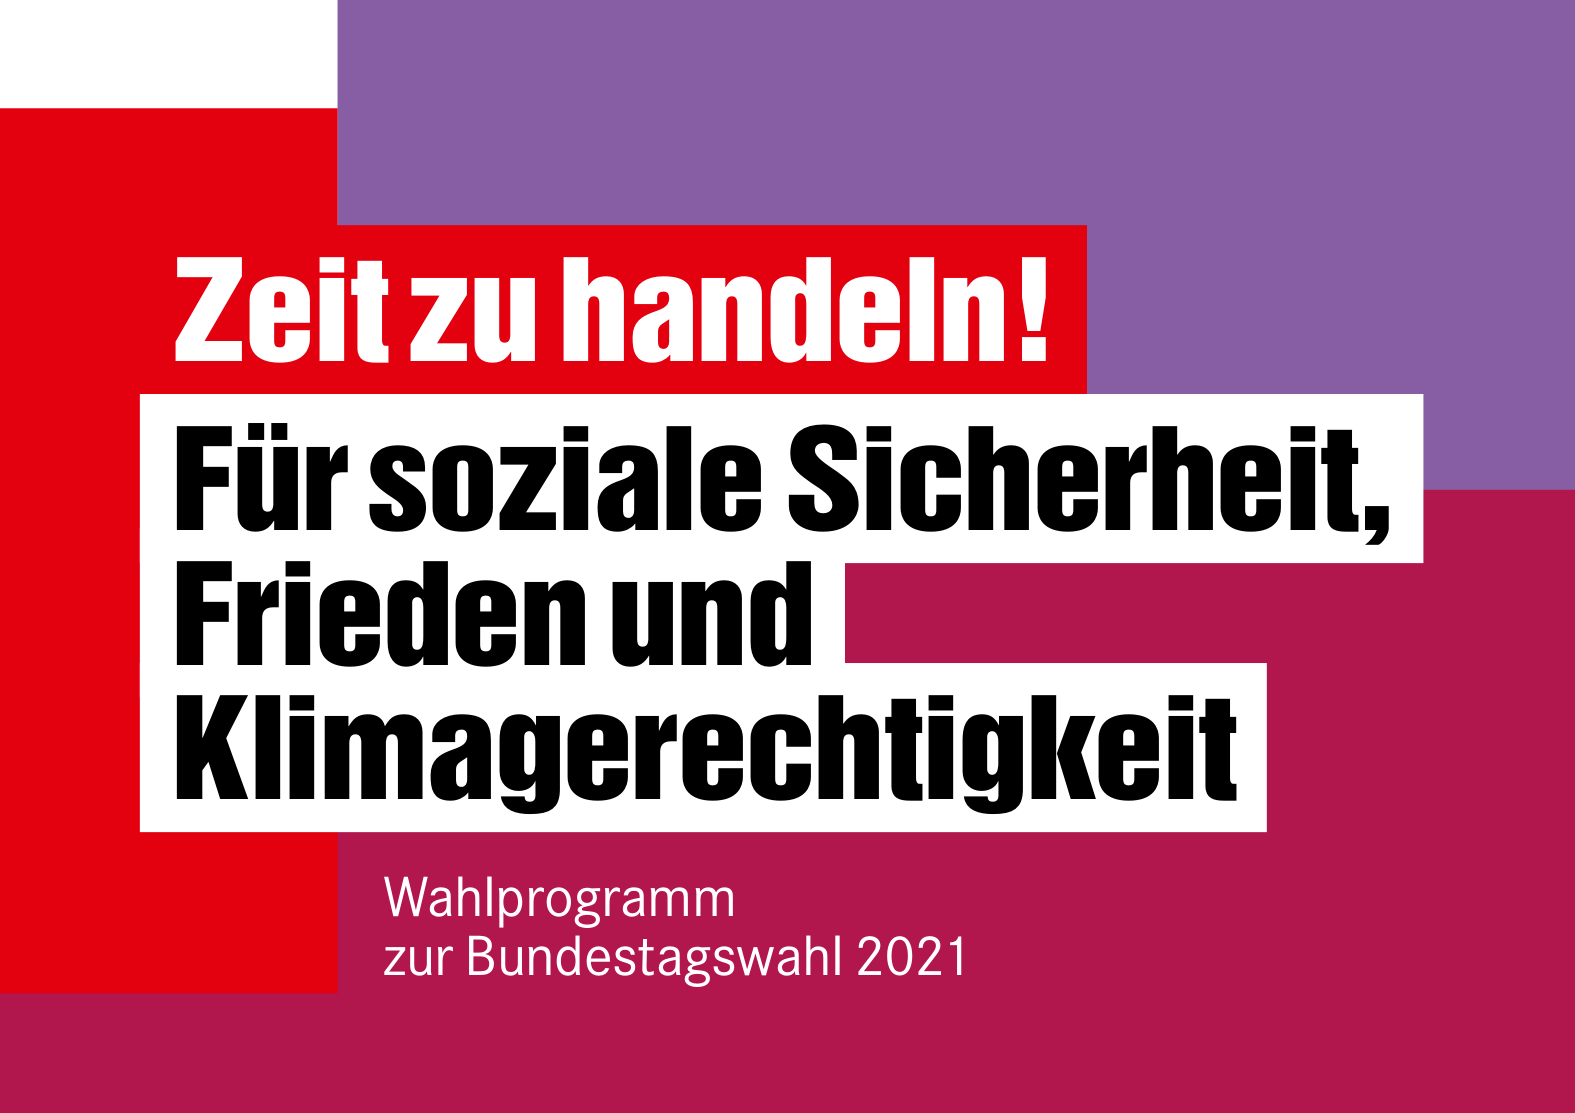 Die Linke - Wahlprogramm für die Bundestagswahl 2021